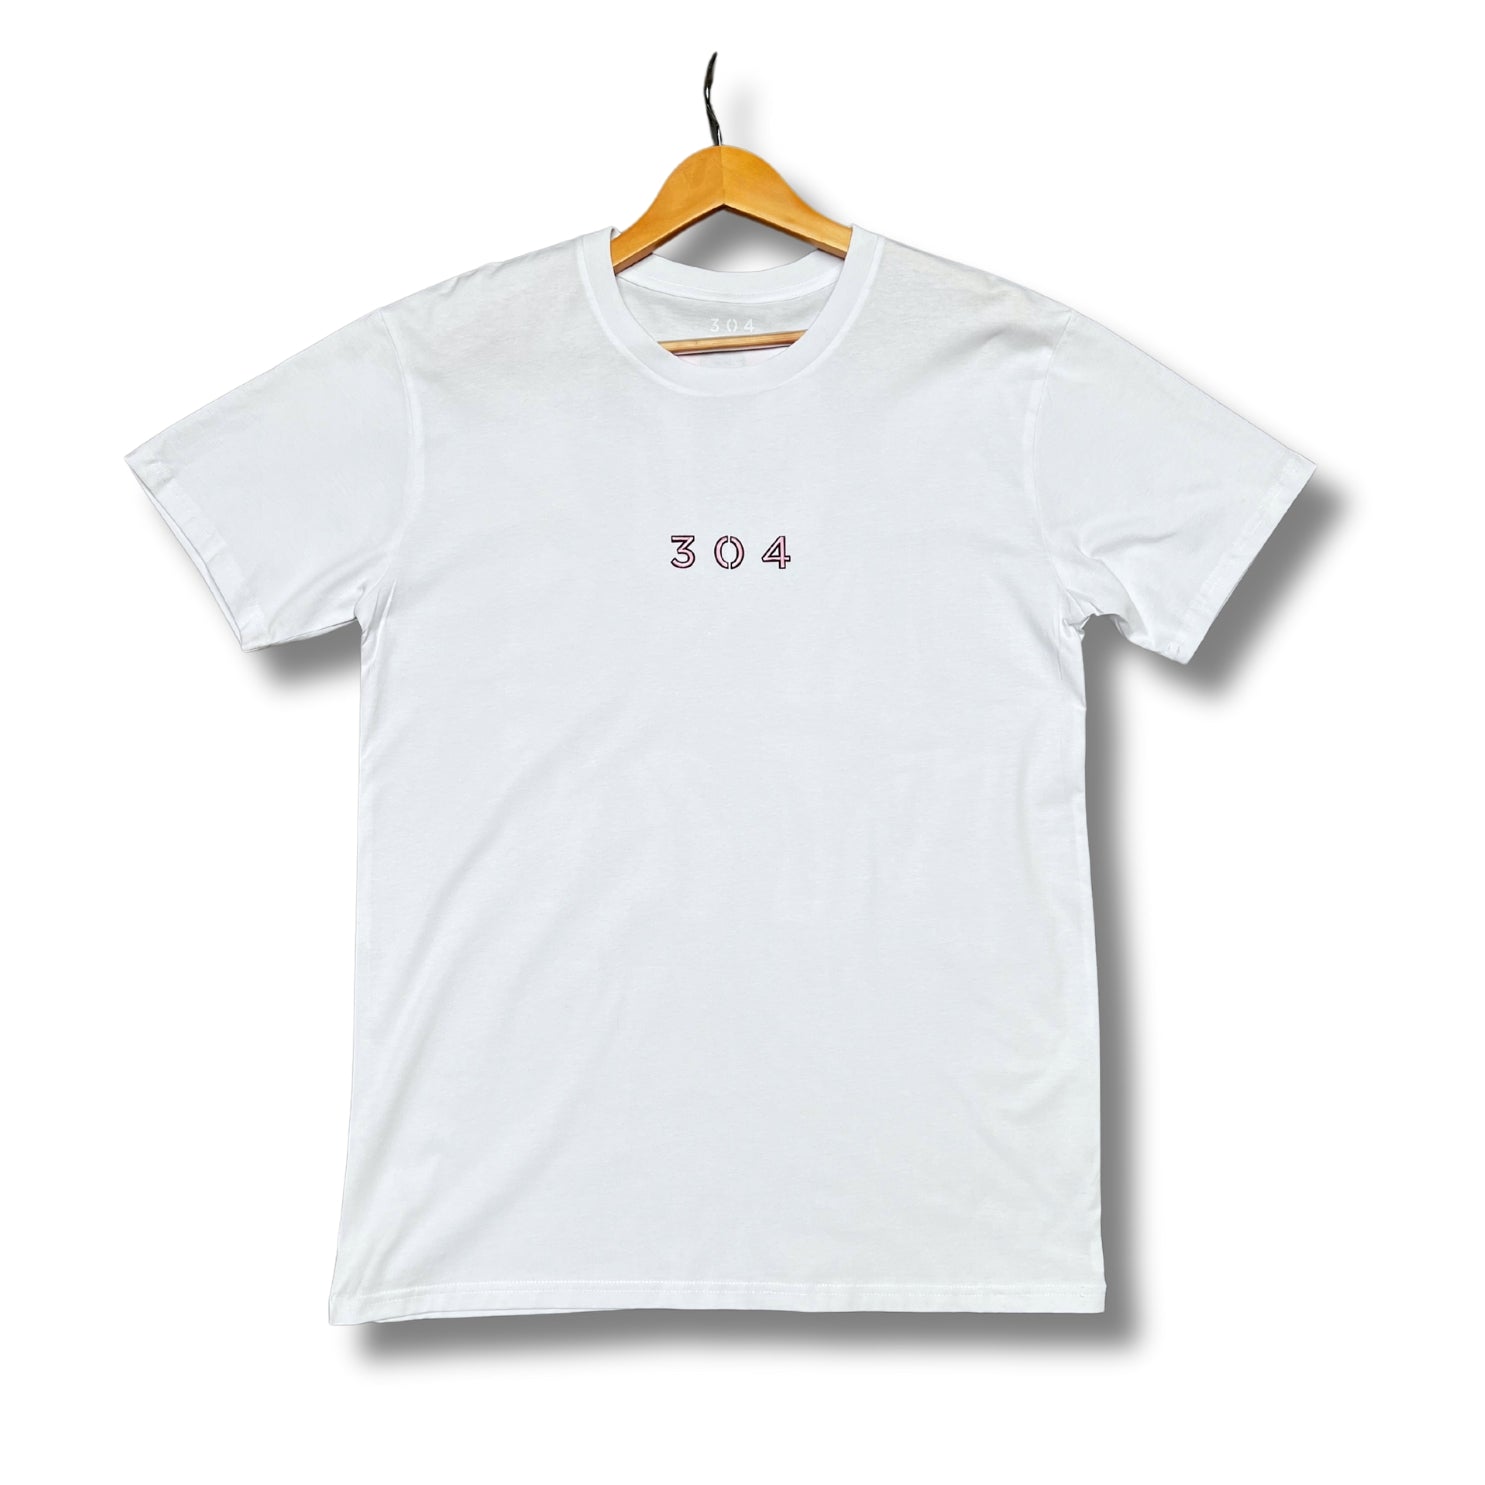 304 G T-Shirt White